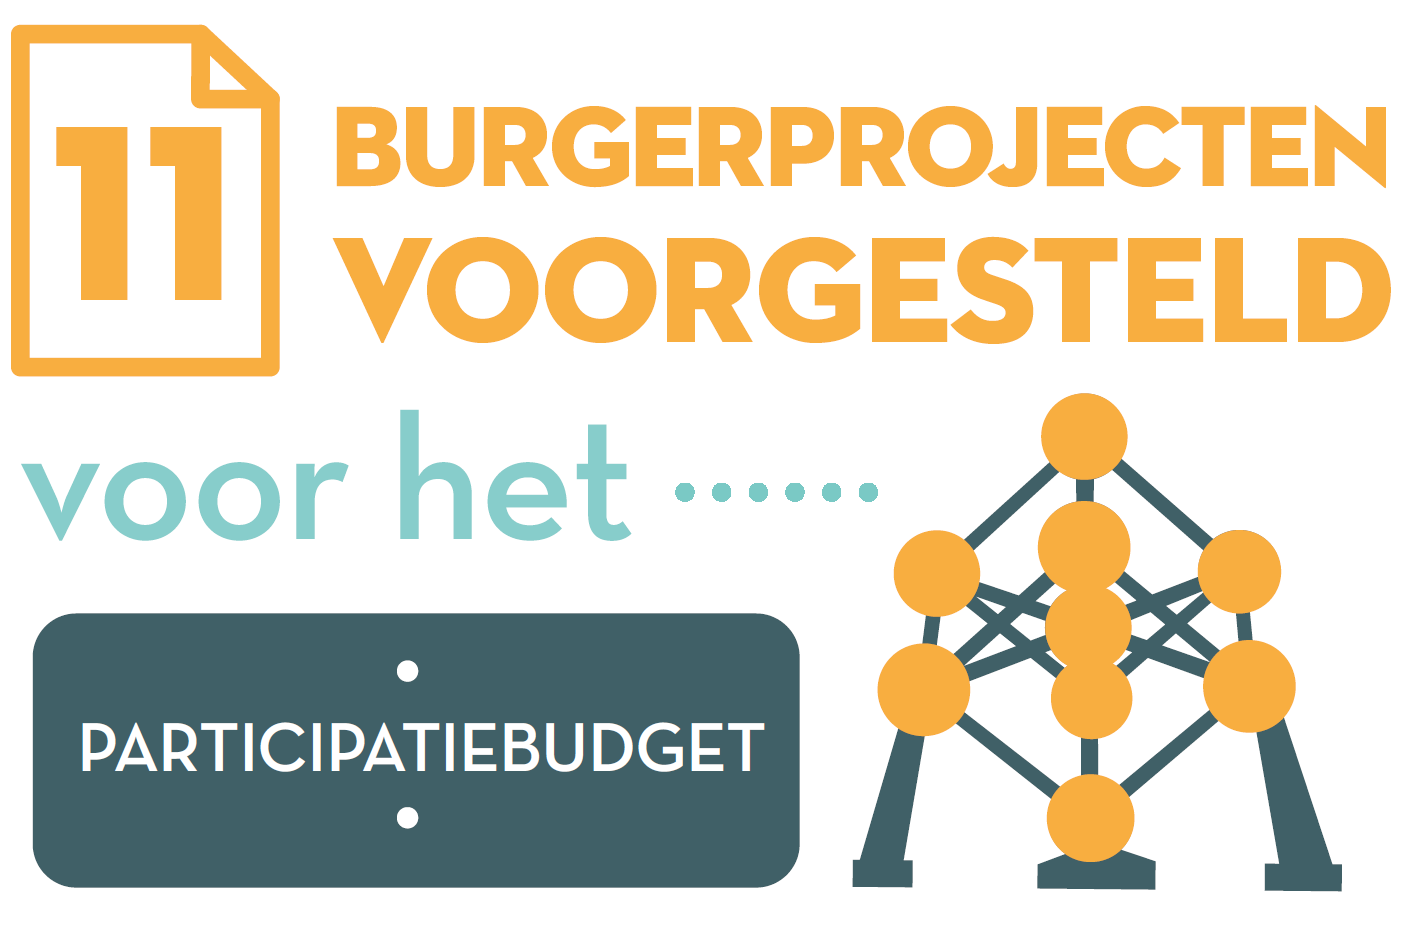 11 burgerprojecten voor het participatiebudget